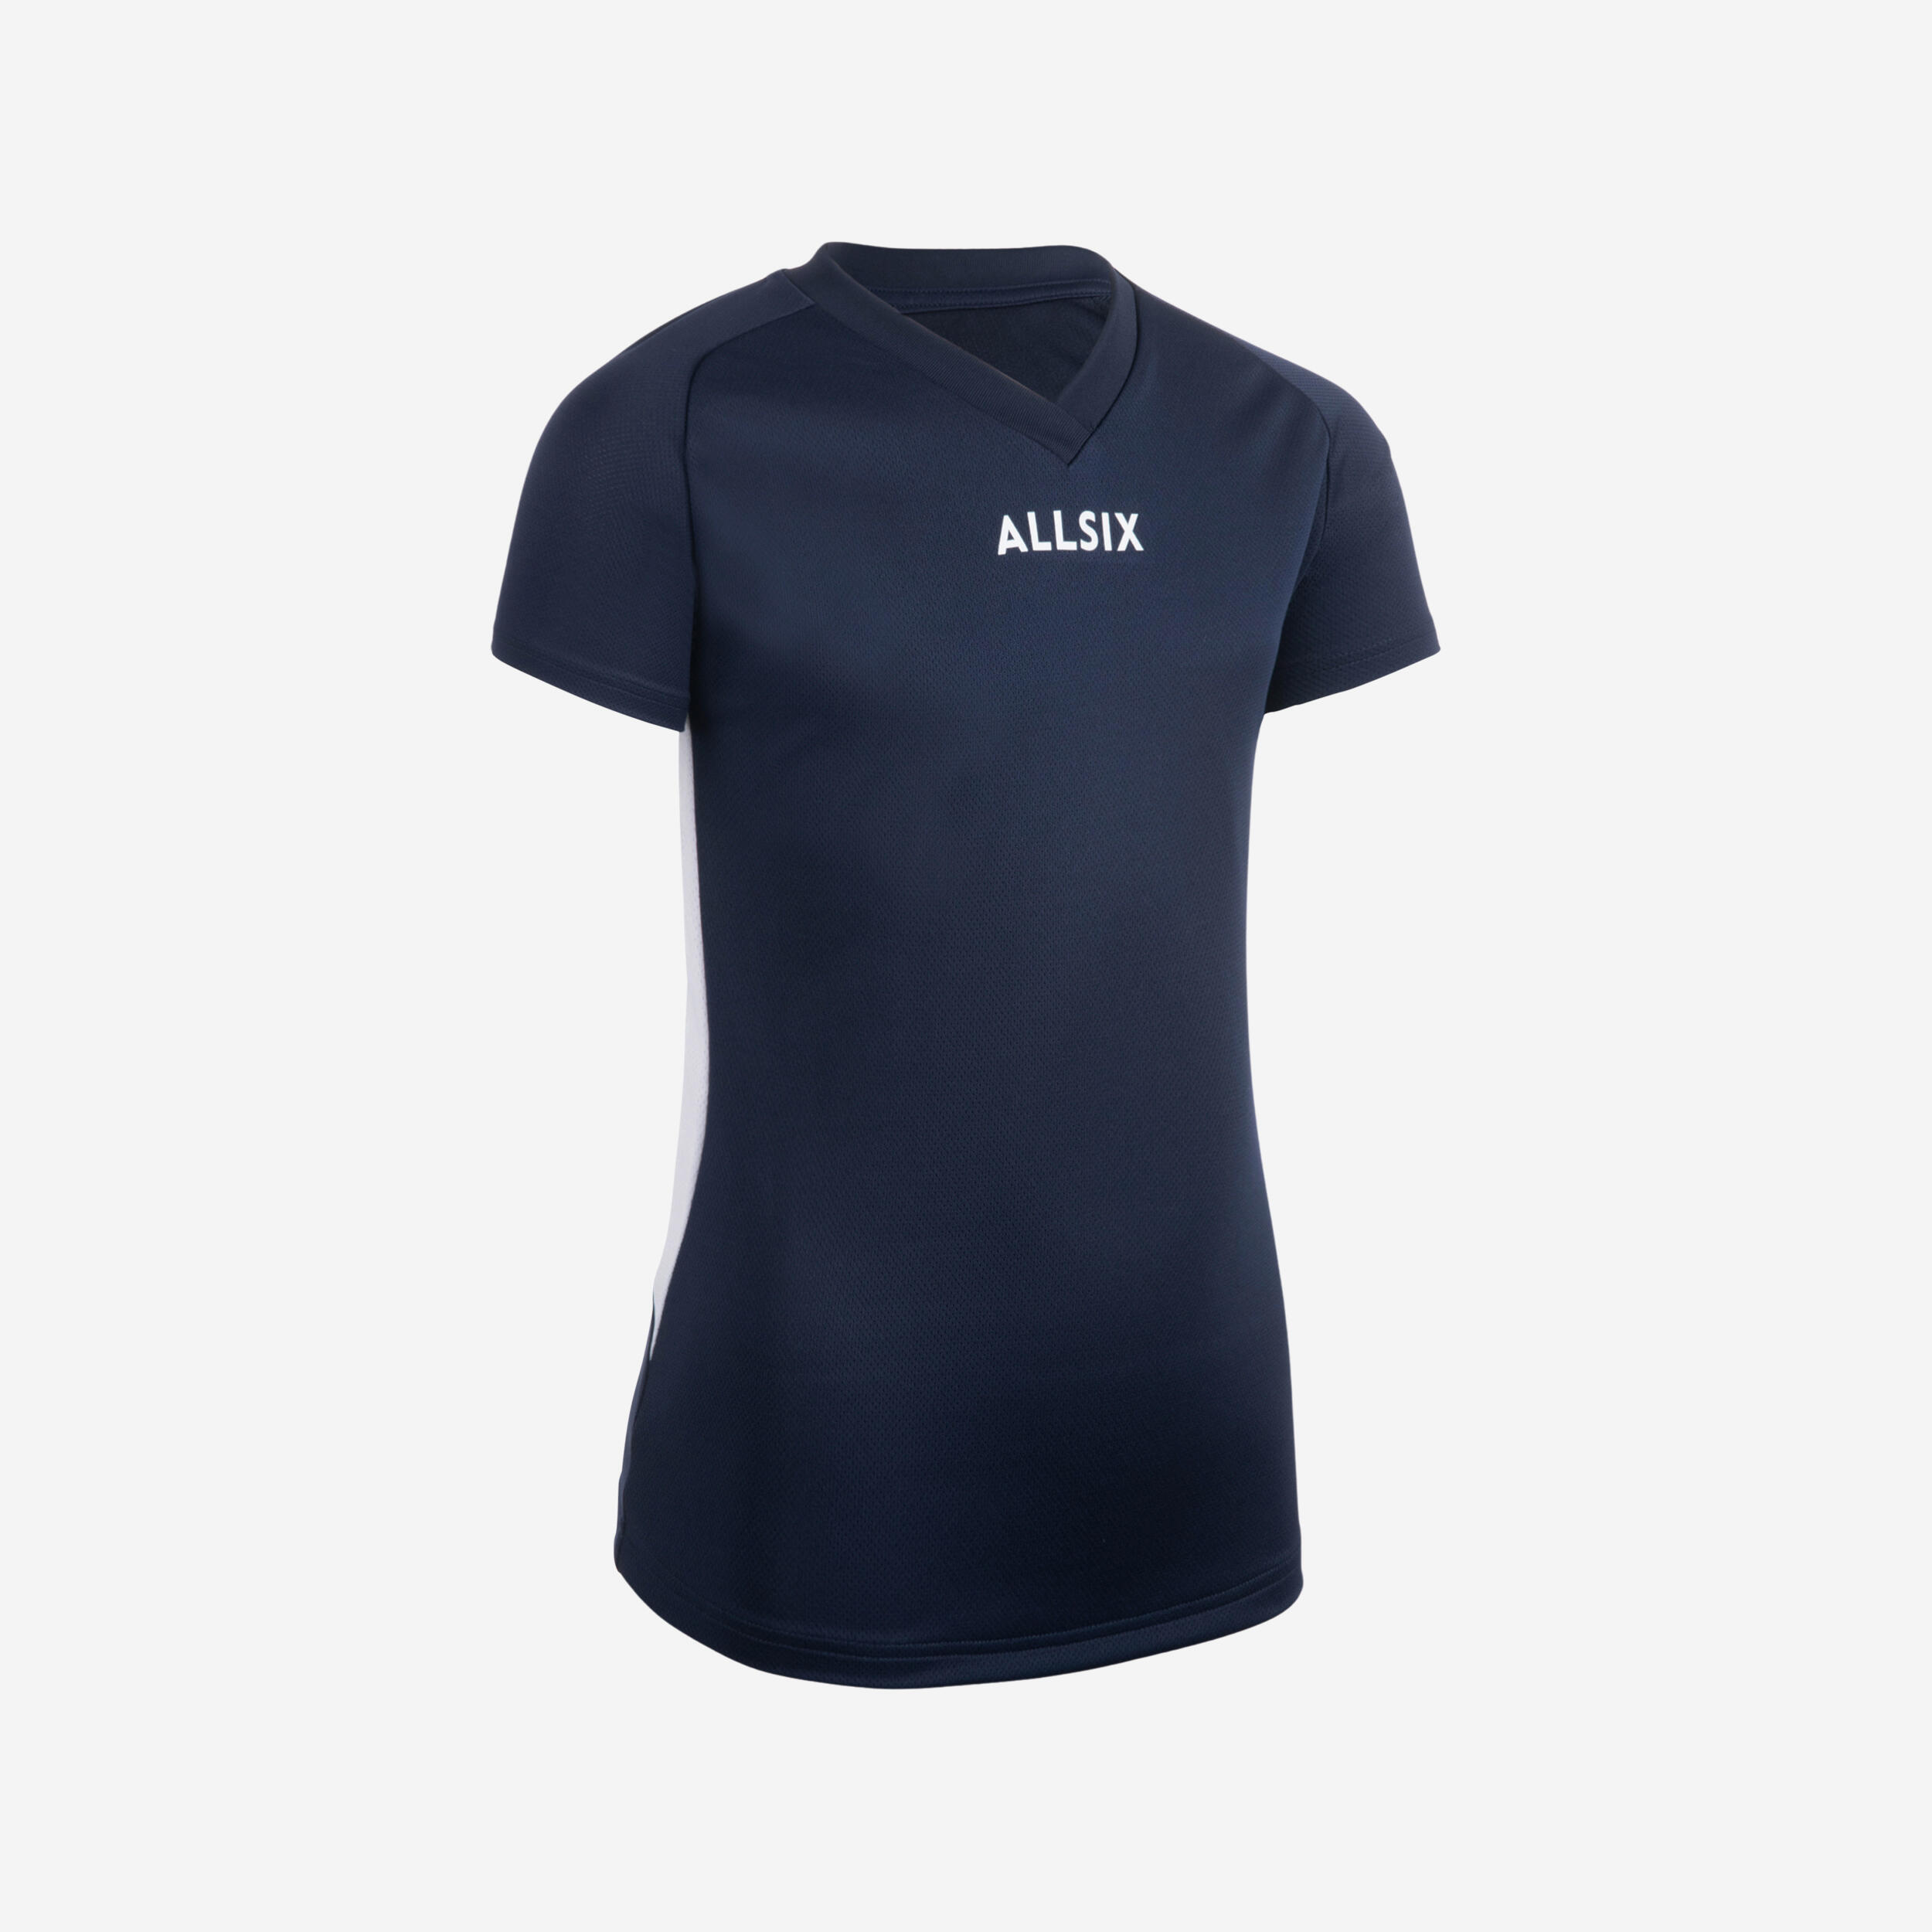 V100 Girls' Volleyball Jersey - Navy Blue 1/6